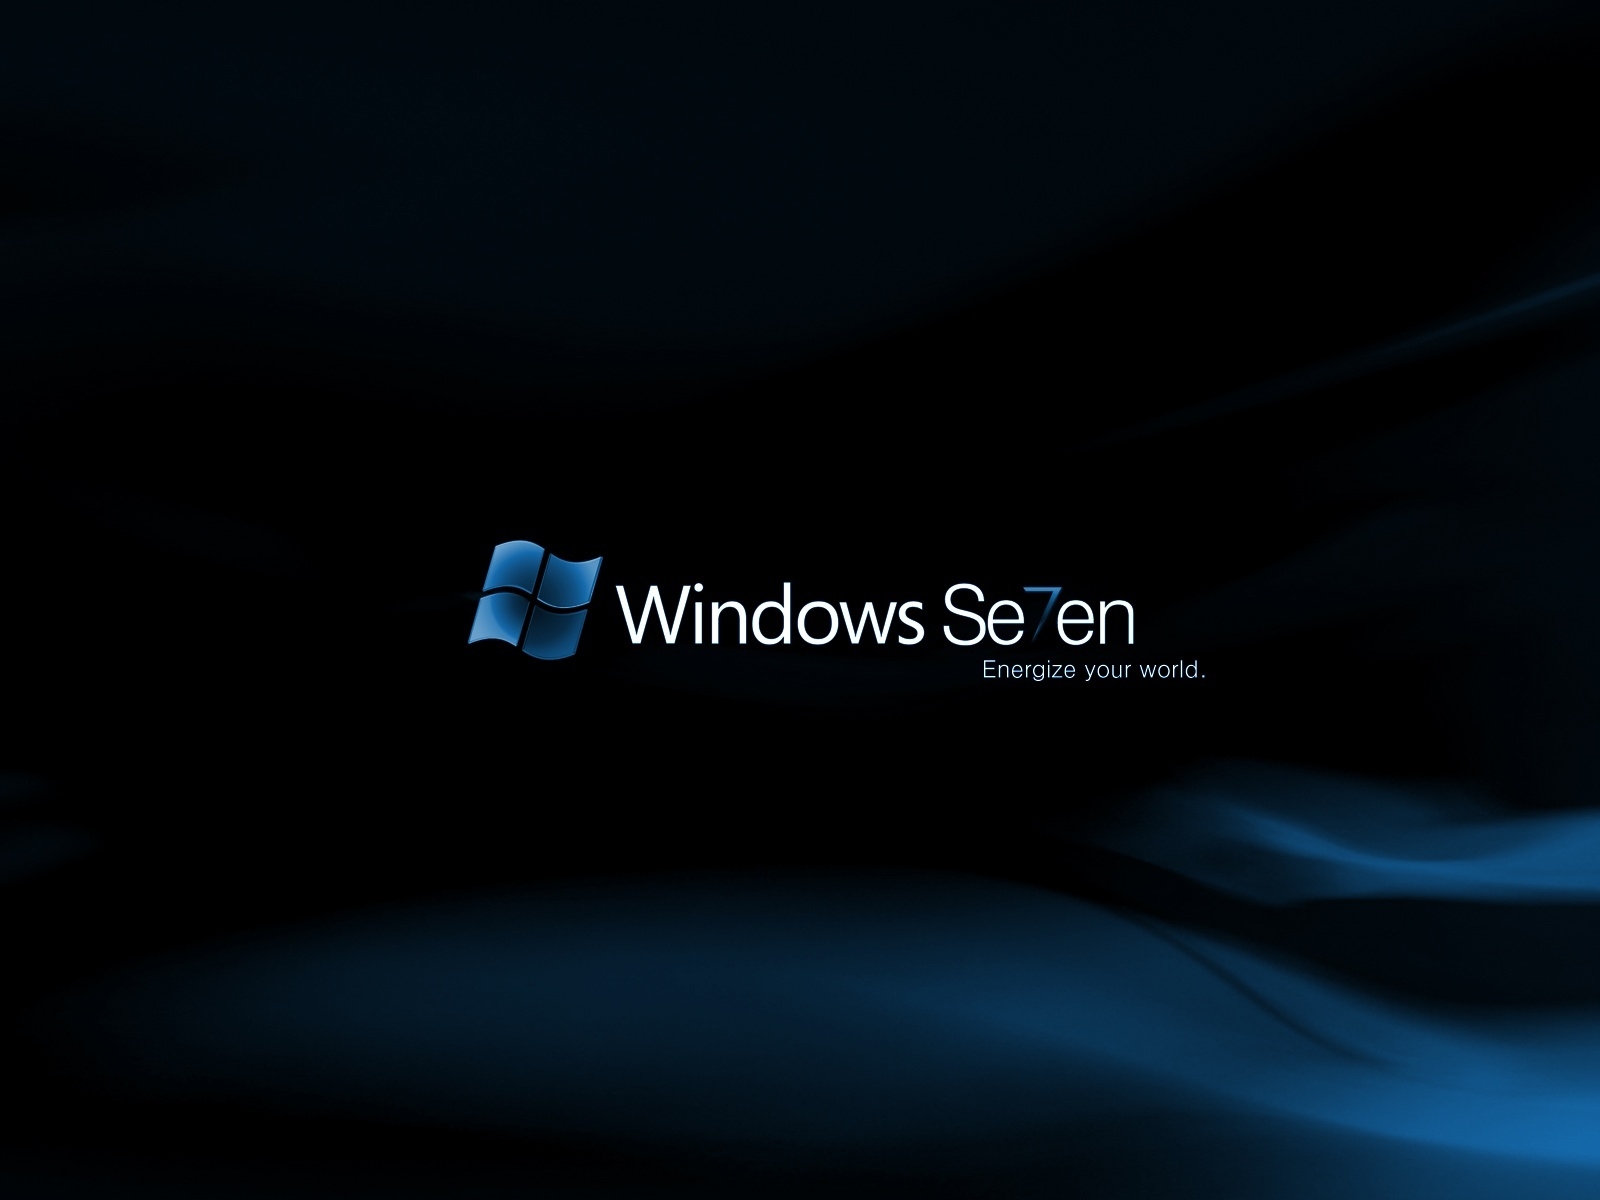 Windows Se7en Midnight for 1600 x 1200 resolution